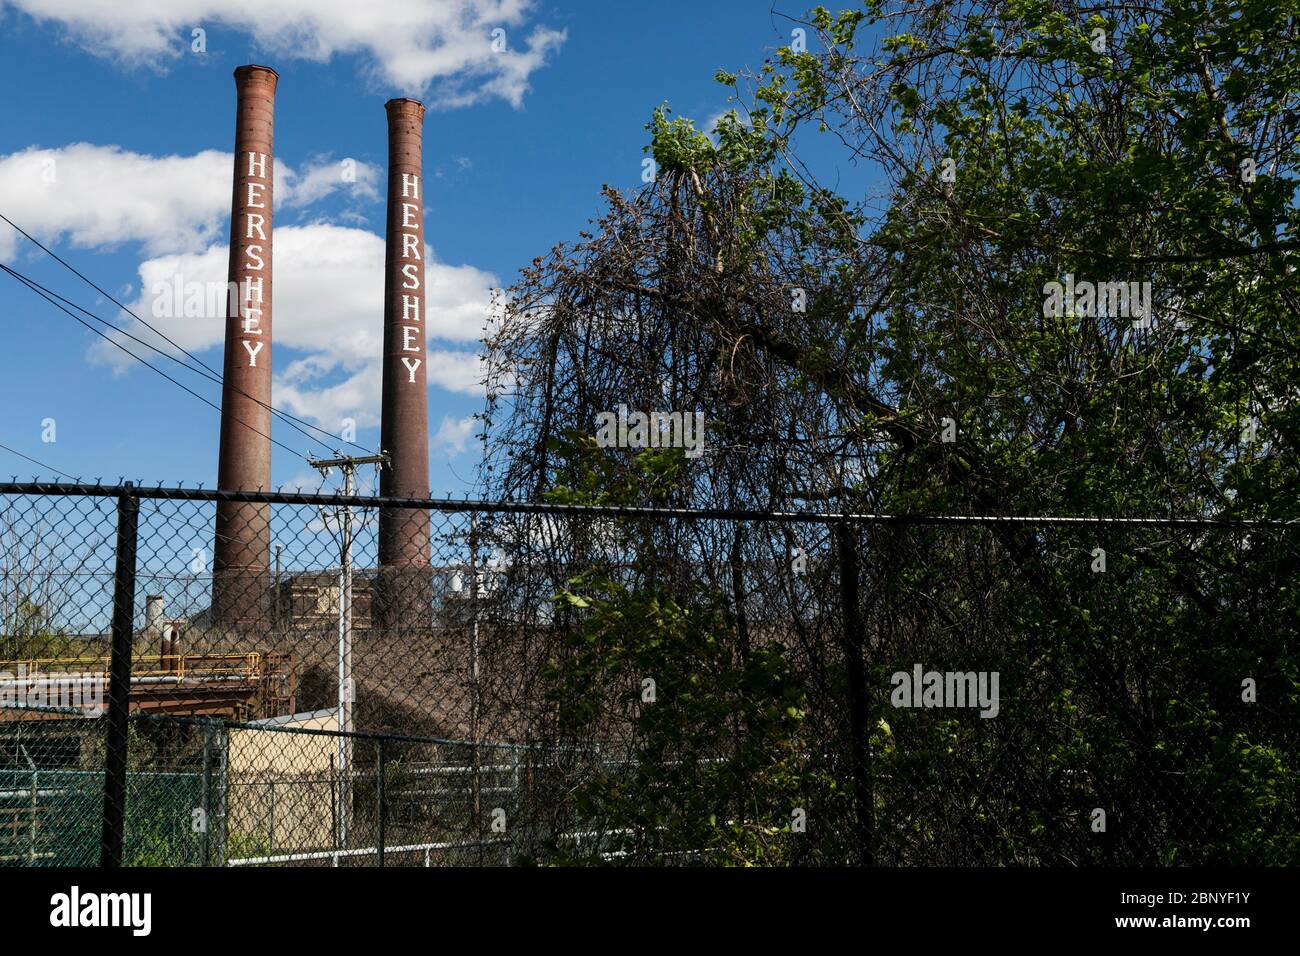 Die Hershey Company (Hershey's) Smokestacks in Hershey, Pennsylvania am 4. Mai 2020. Stockfoto